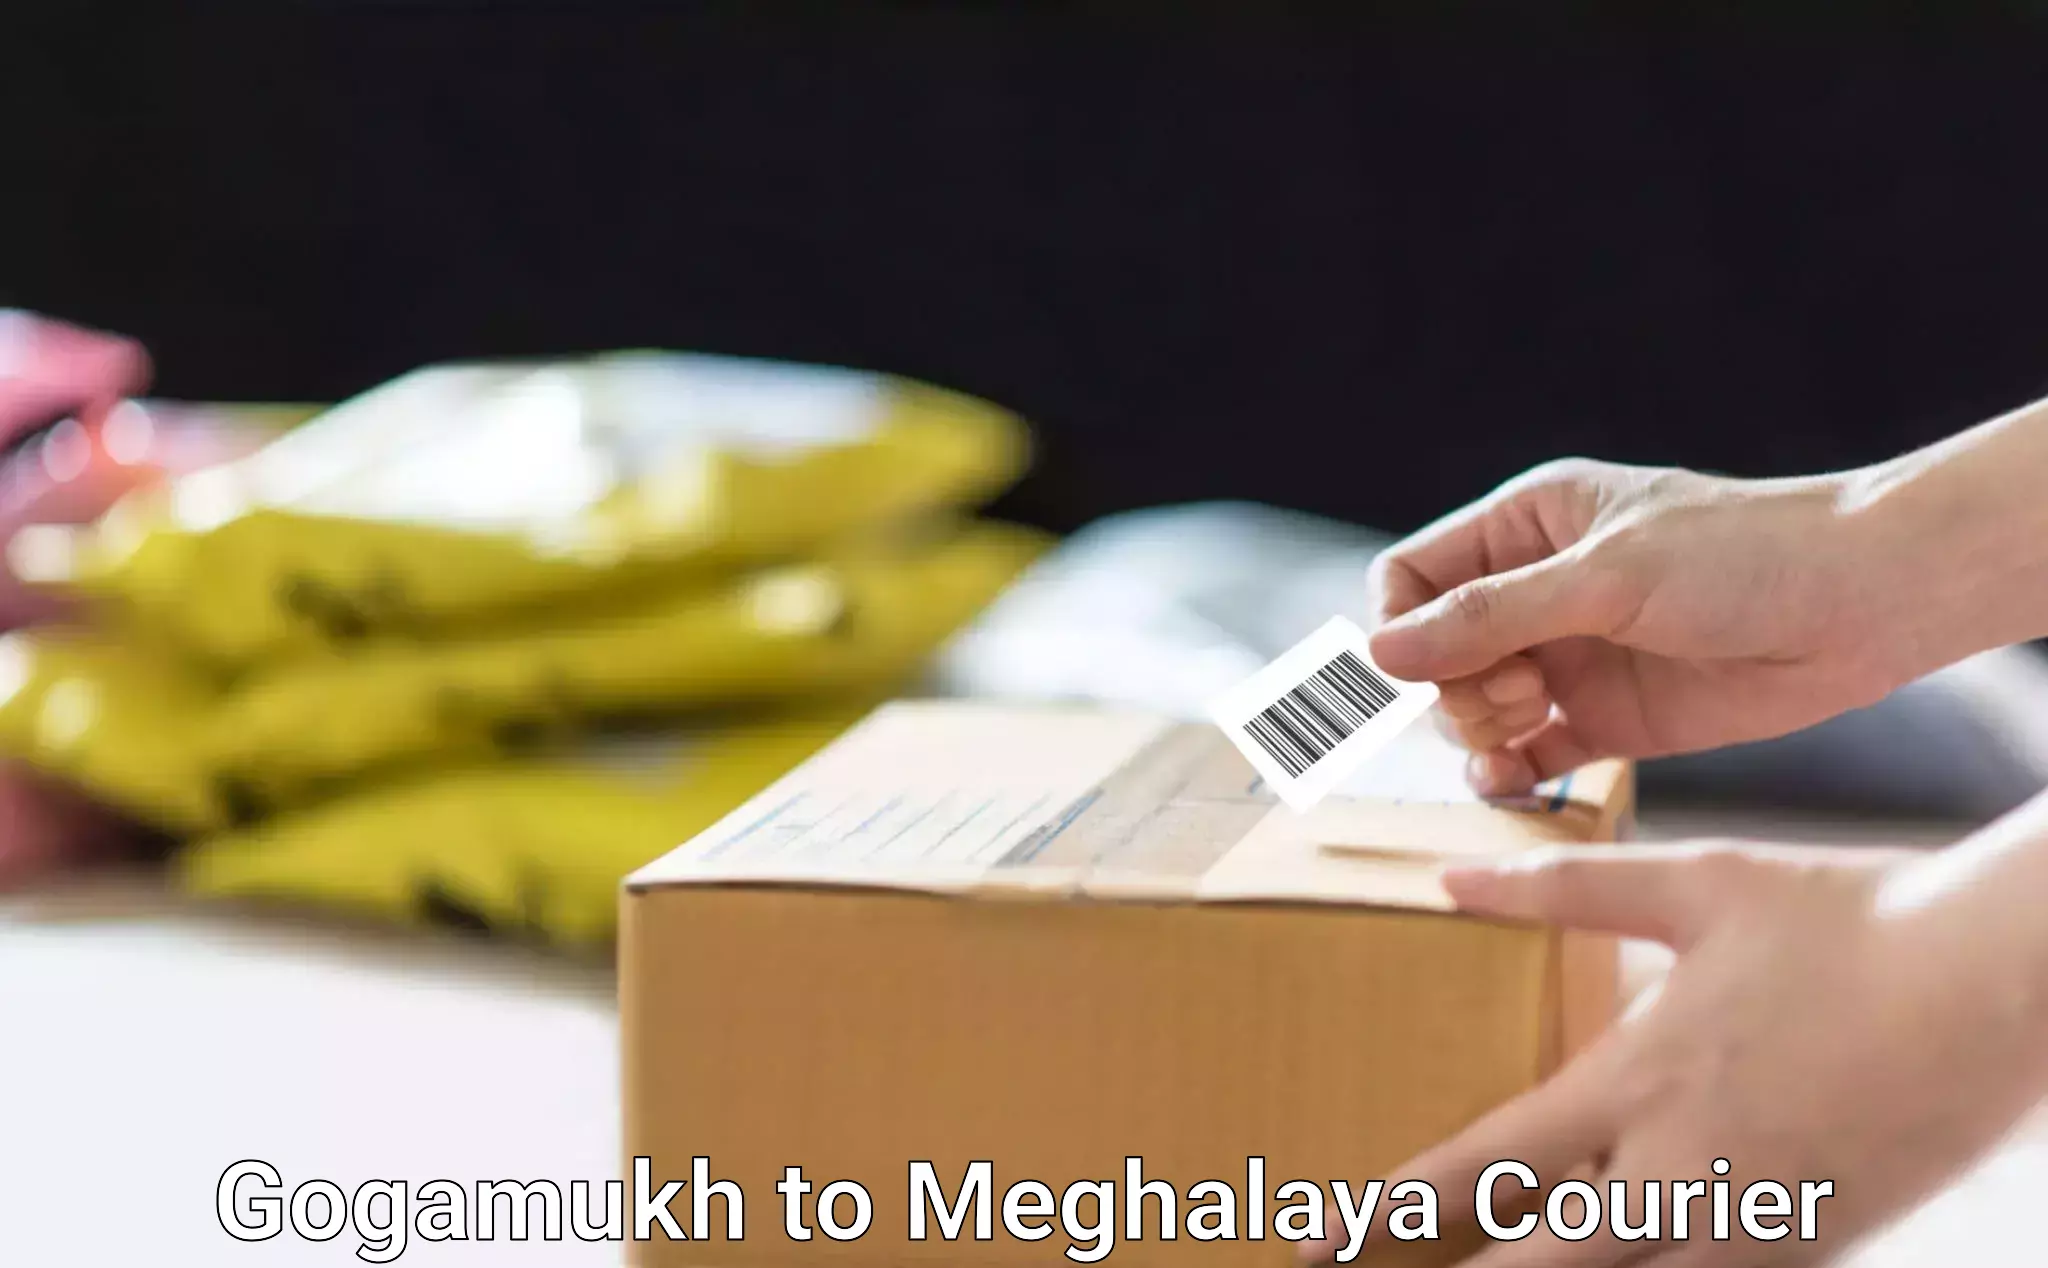 Efficient package consolidation Gogamukh to NIT Meghalaya